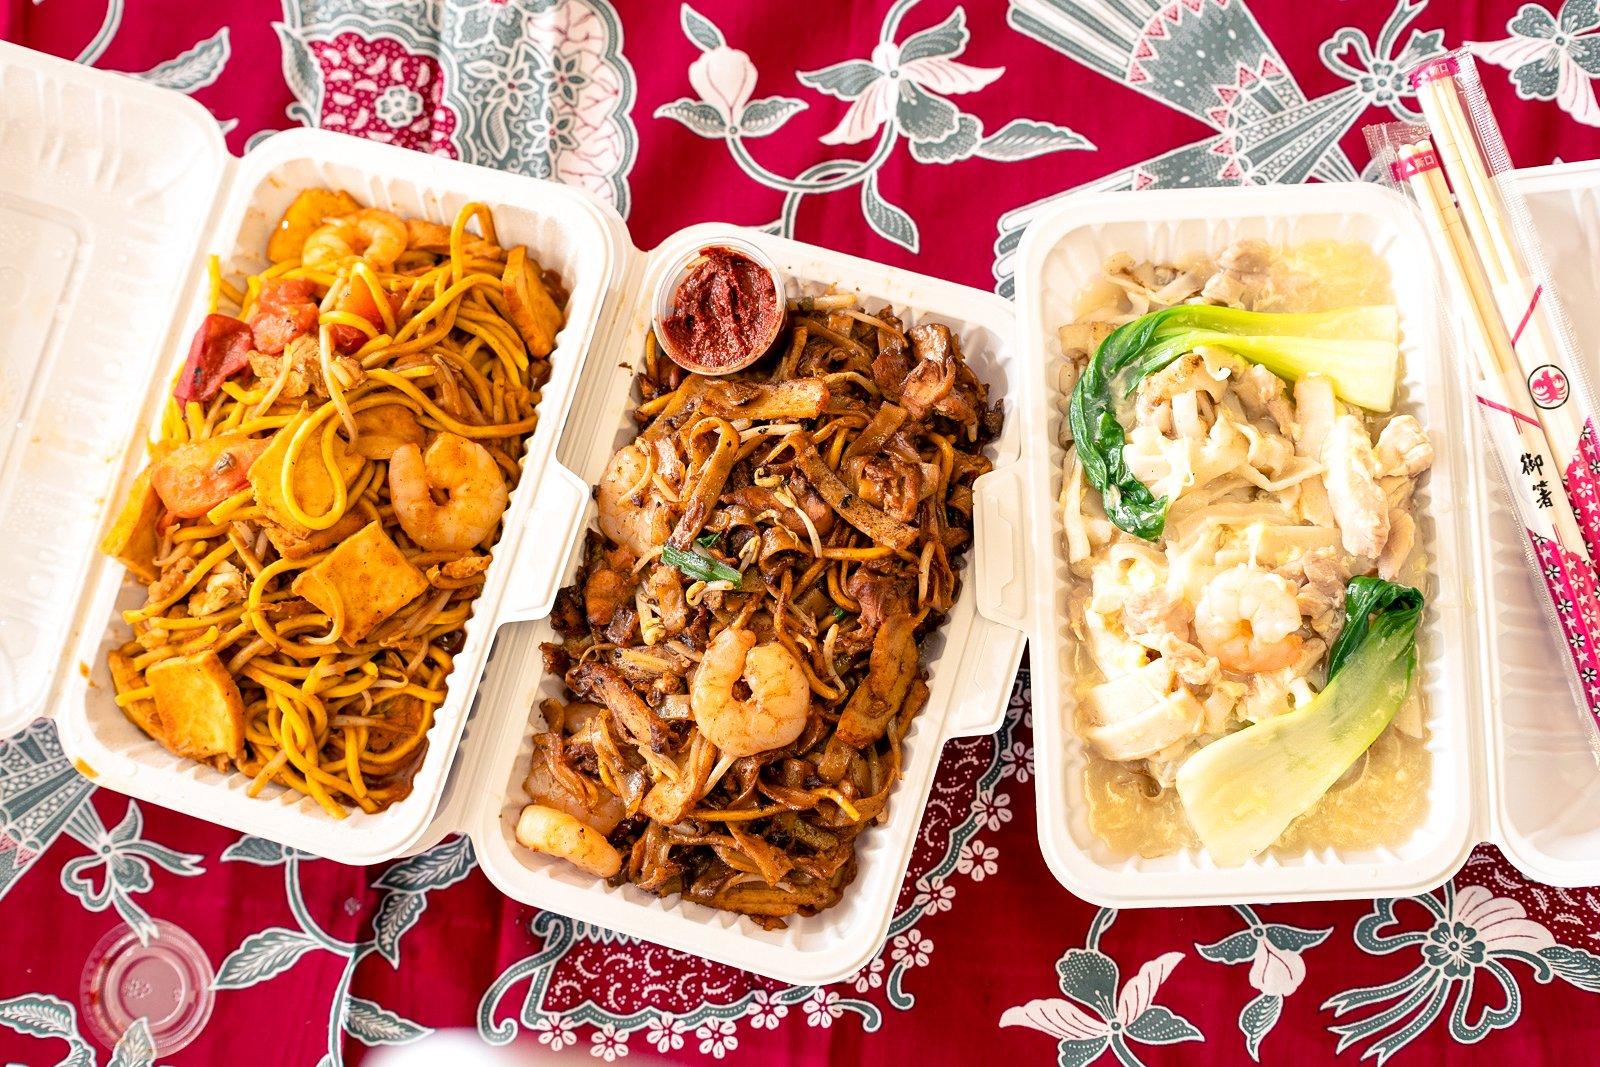 Chon, Tracy and Bryan Choy make Malaysian street food worthy of Kuala Lumpur